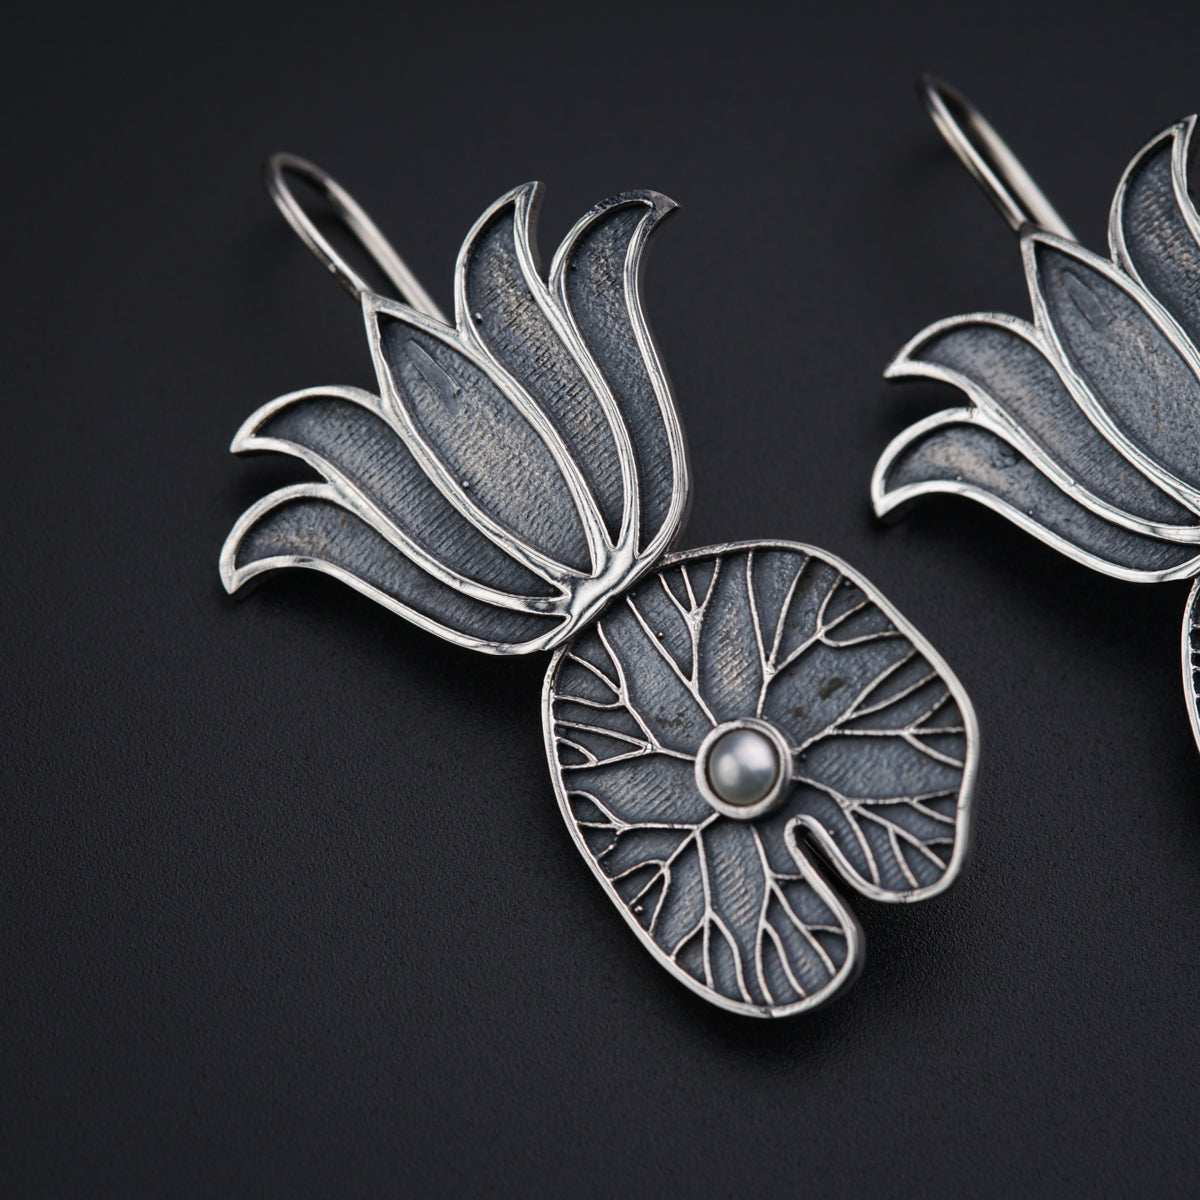 Handmade Silver Earrings: Lotus and Lotus Leaf